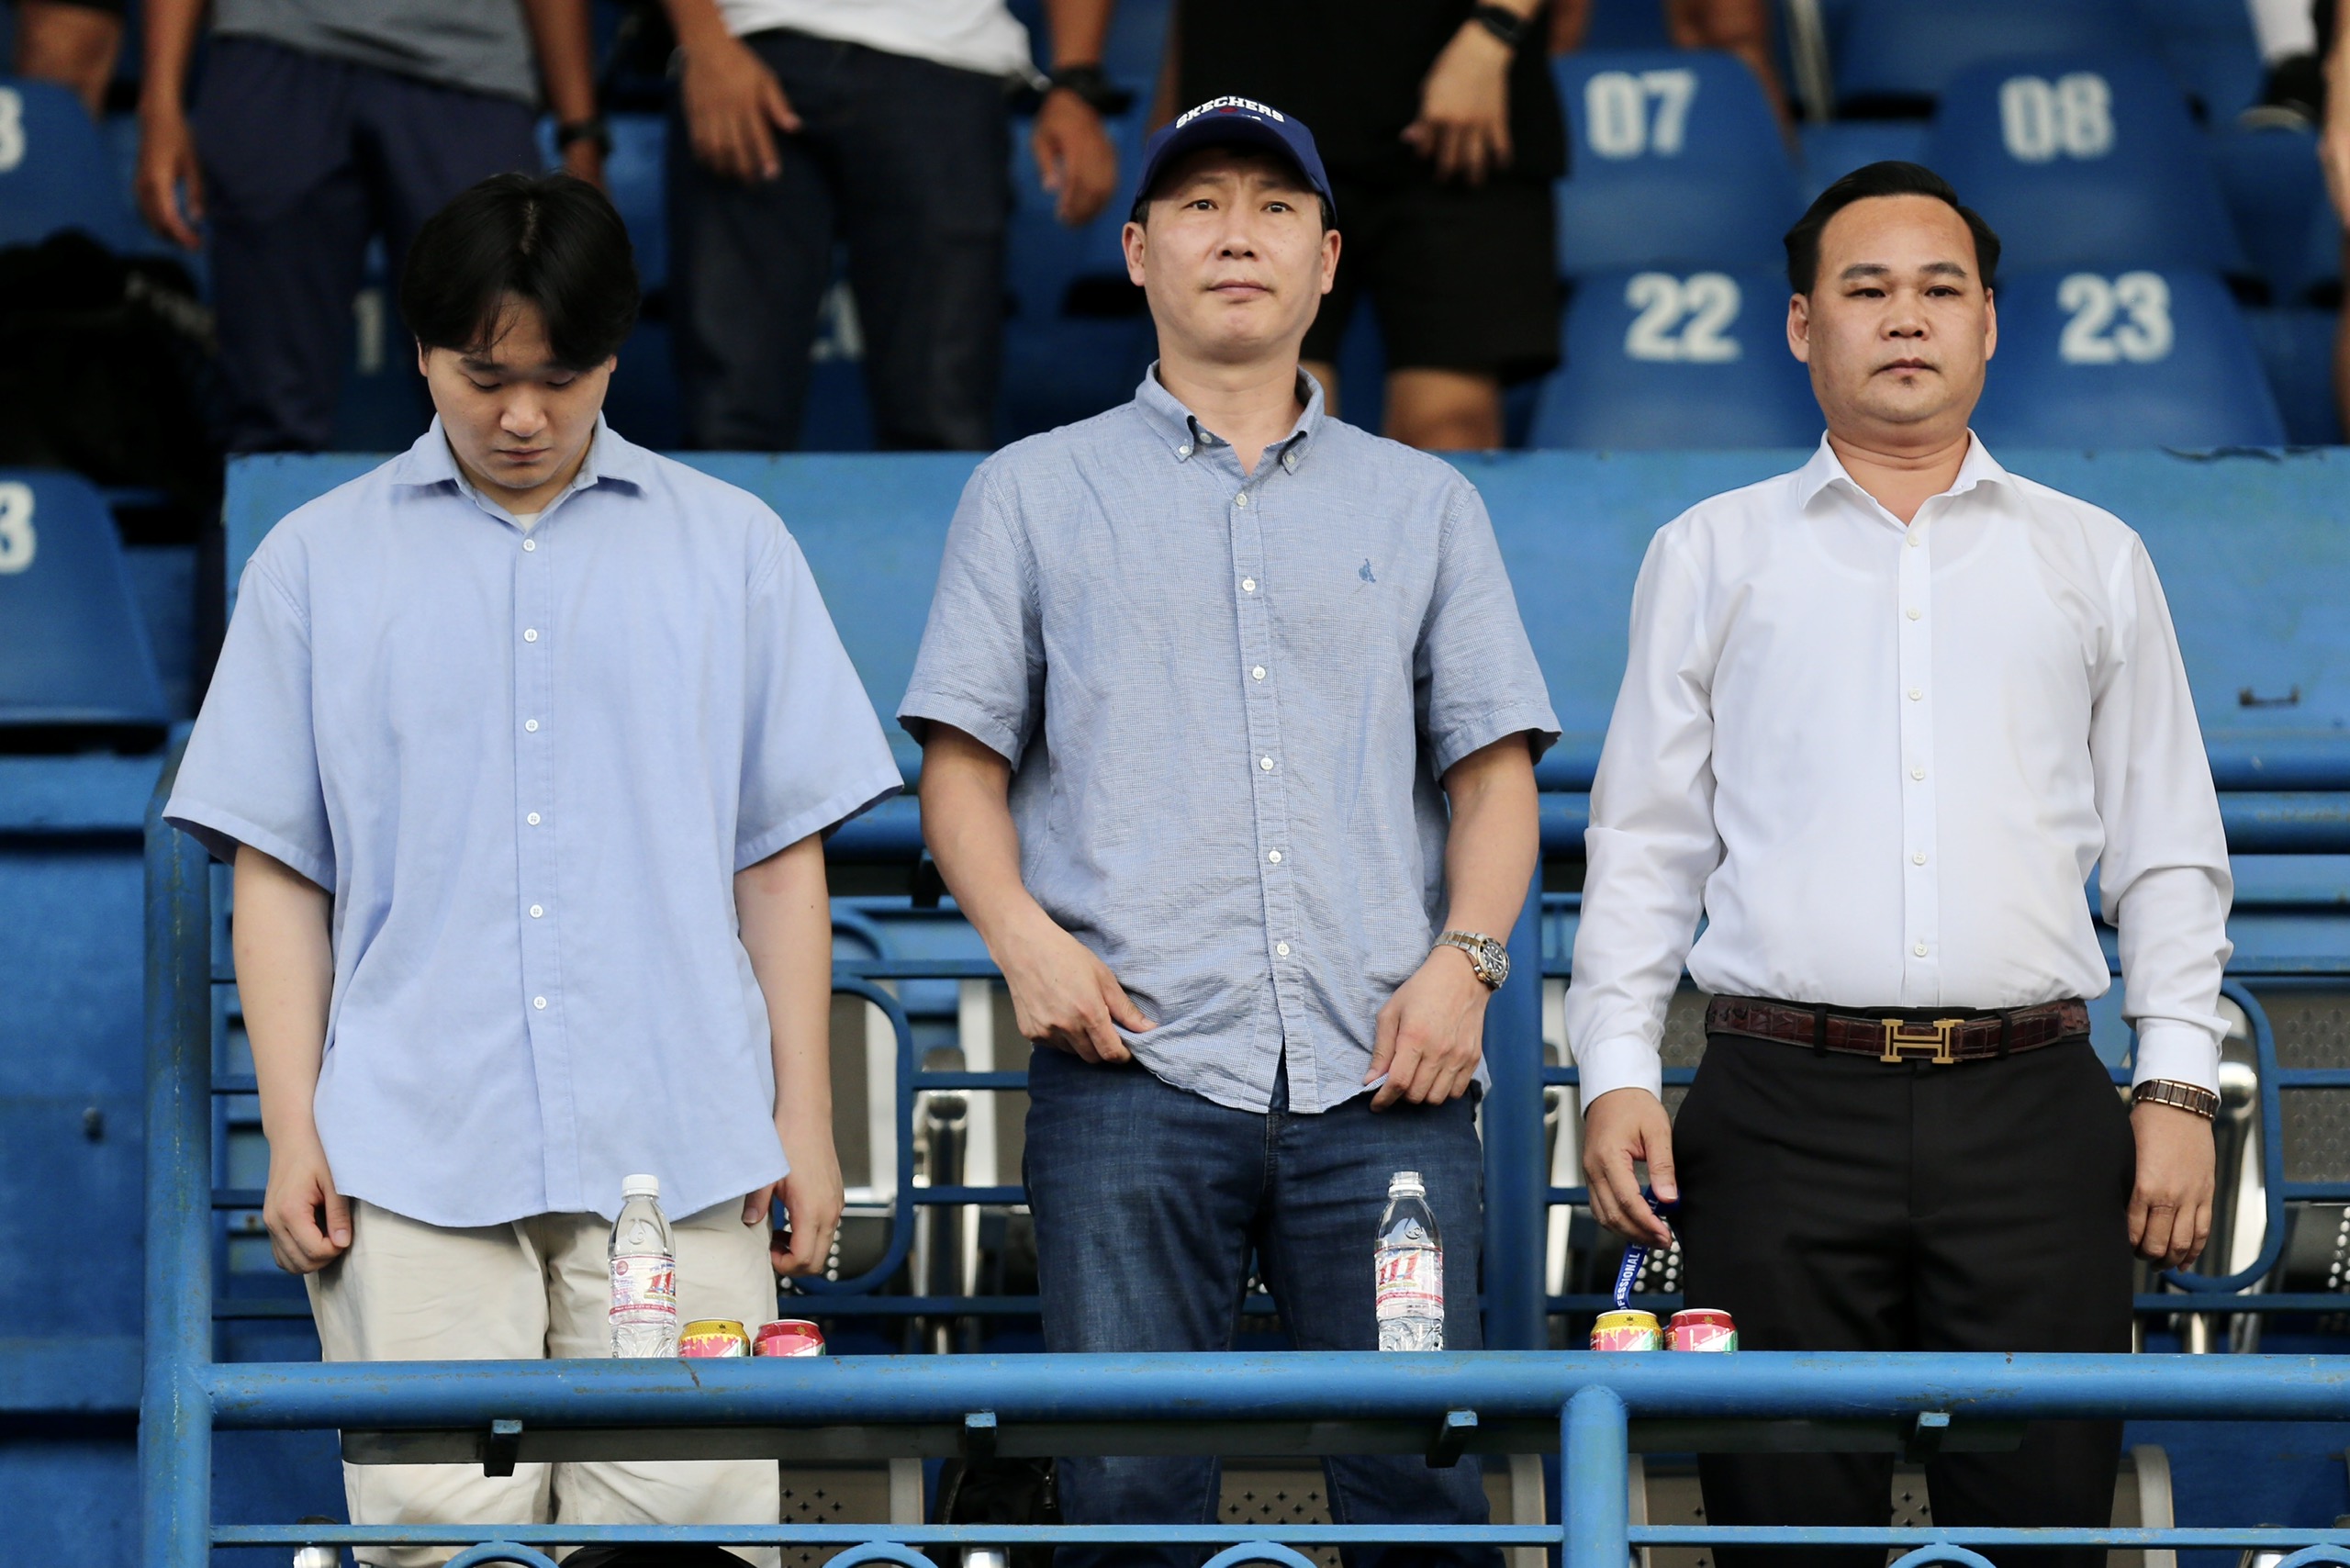 HLV Kim Sang-sik (giữa) được đông đảo người hâm mộ chào đón khi dự khán ở các trận đấu V-League